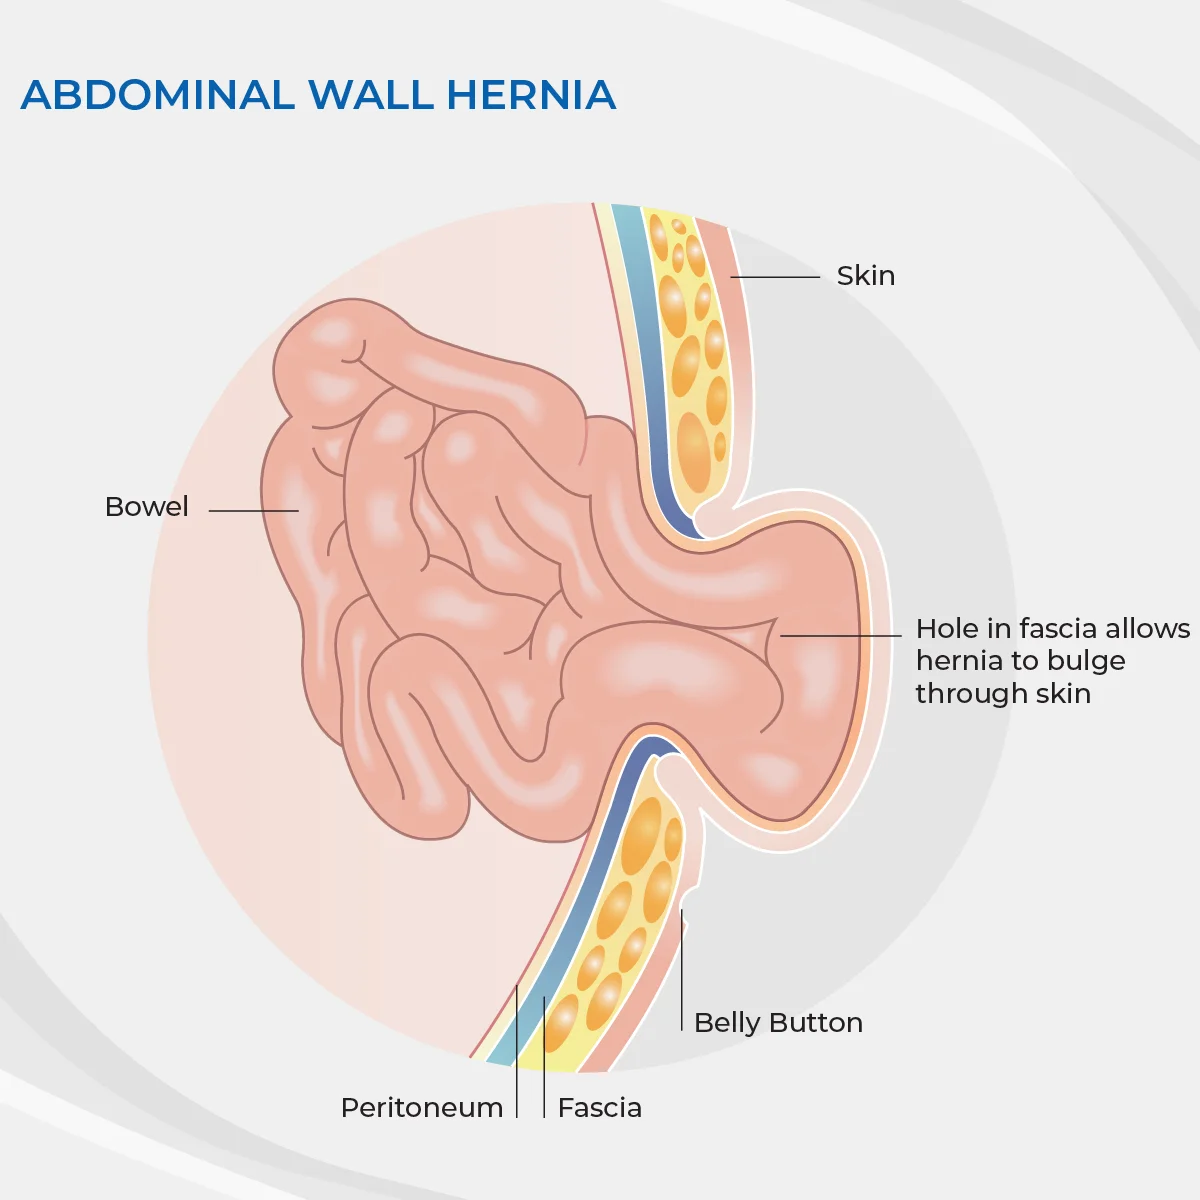 Umbilical Hernia Surgery